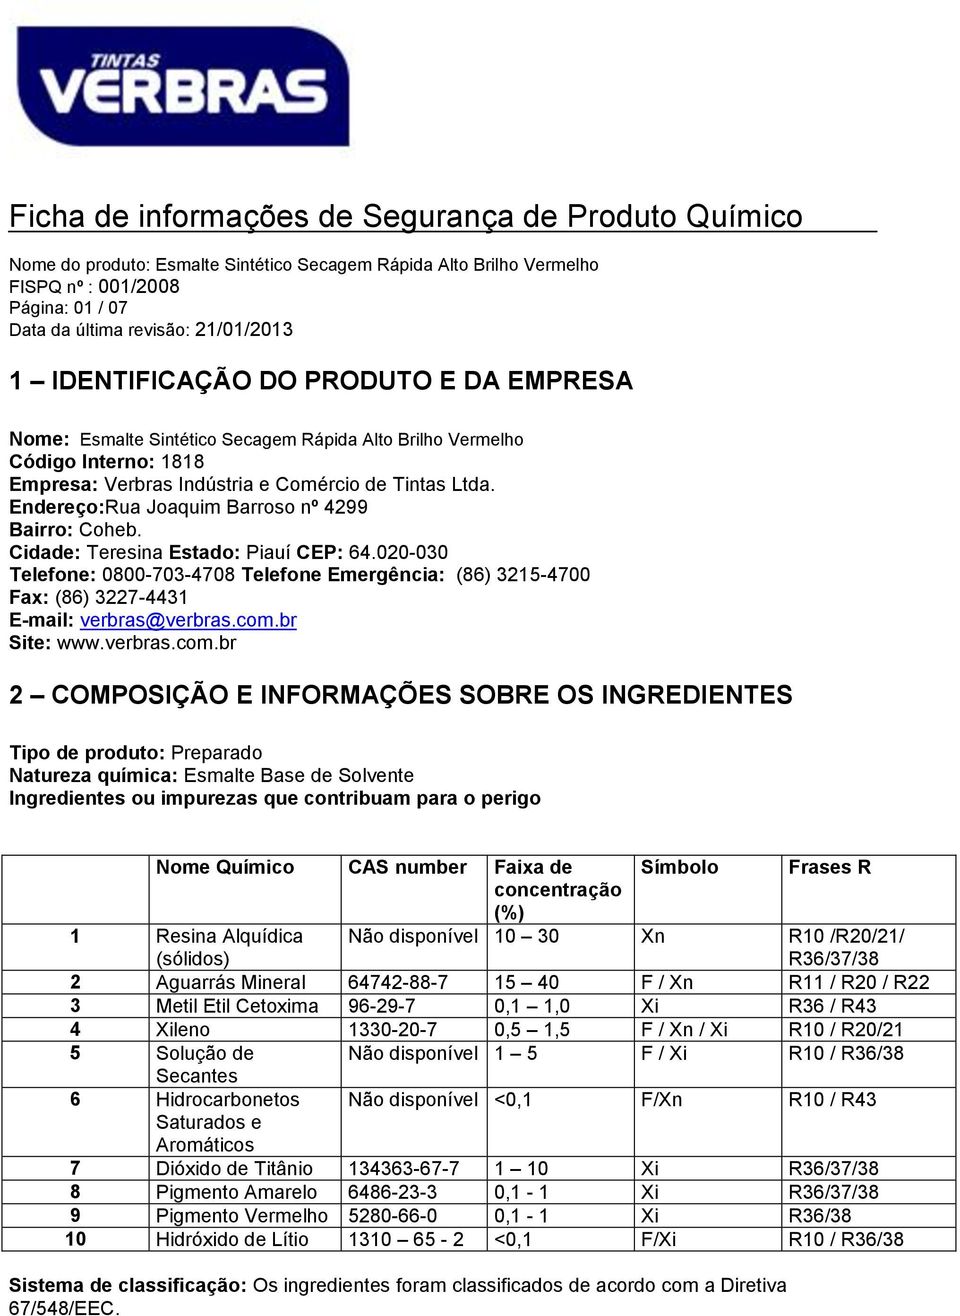 Cidade: Teresina Estado: Piauí CEP: 64.020-030 Telefone: 0800-703-4708 Telefone Emergência: (86) 3215-4700 Fax: (86) 3227-4431 E-mail: verbras@verbras.com.